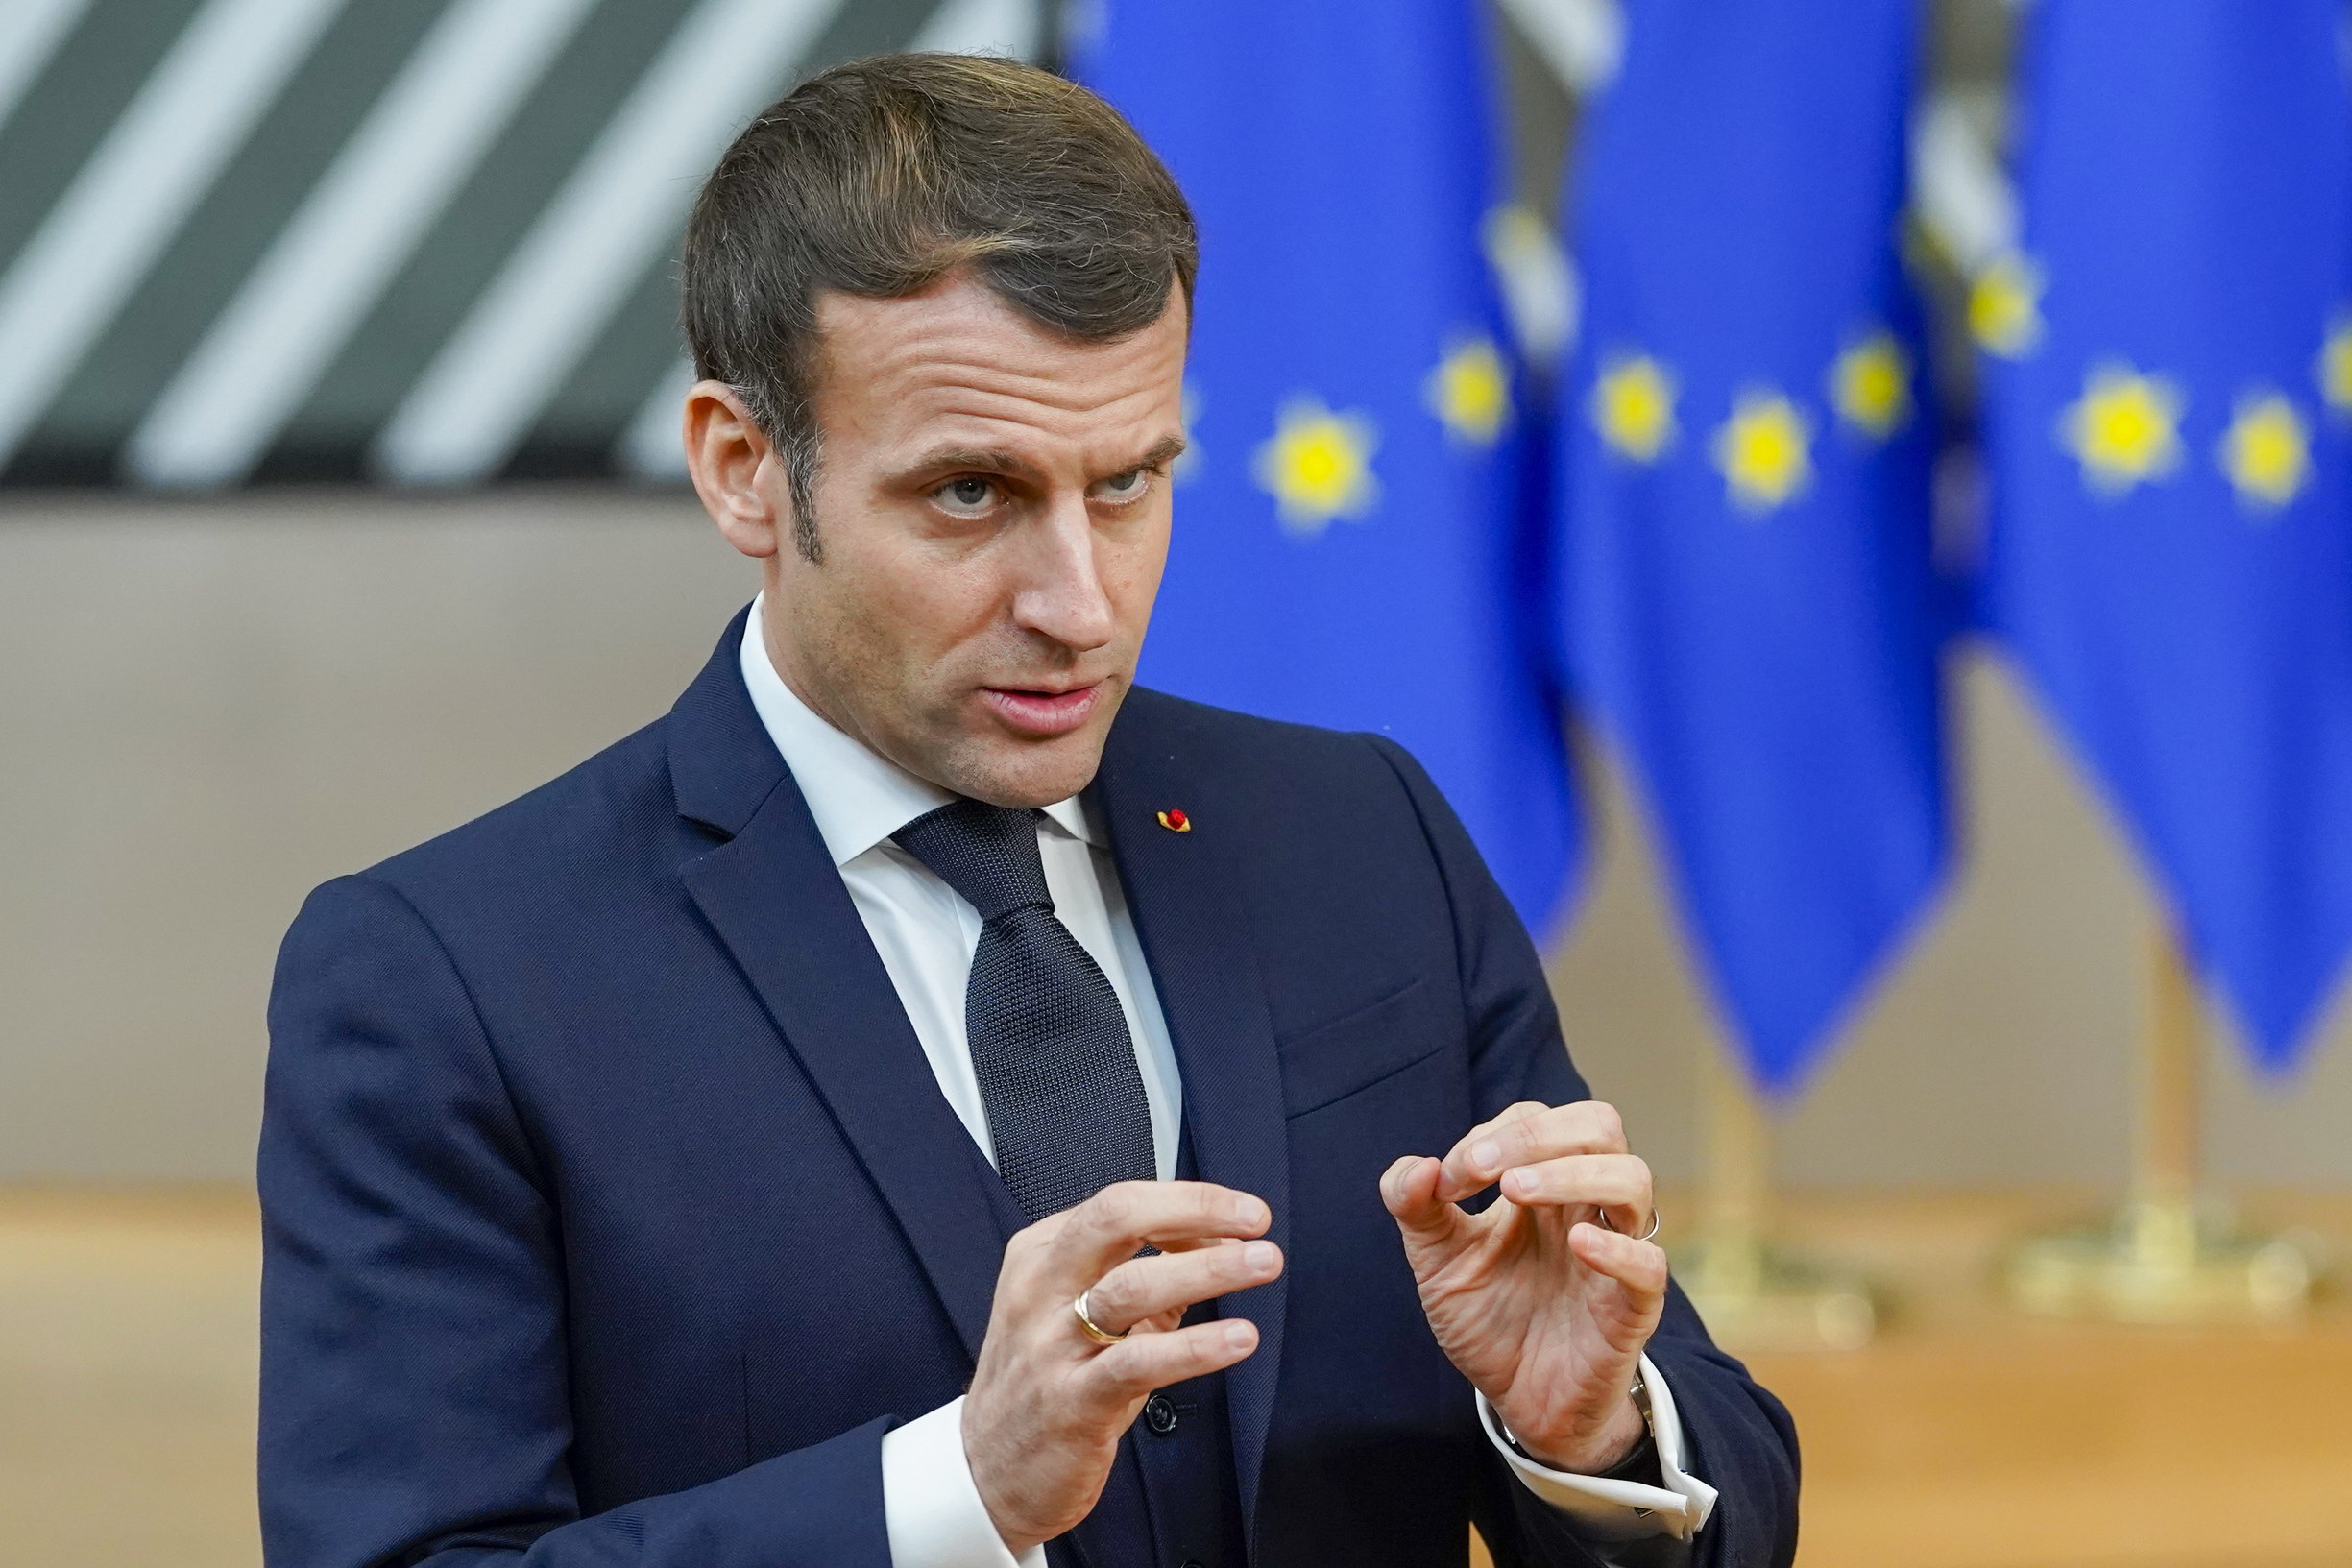 La scelta di Macron per obbligo vaccinale divide Italia e Europa